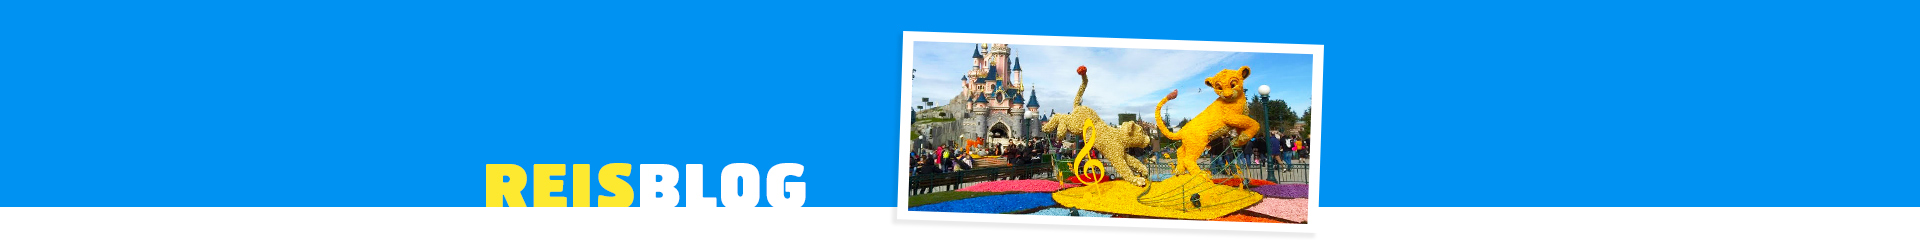 Disneyland Parijs kasteel met Simba